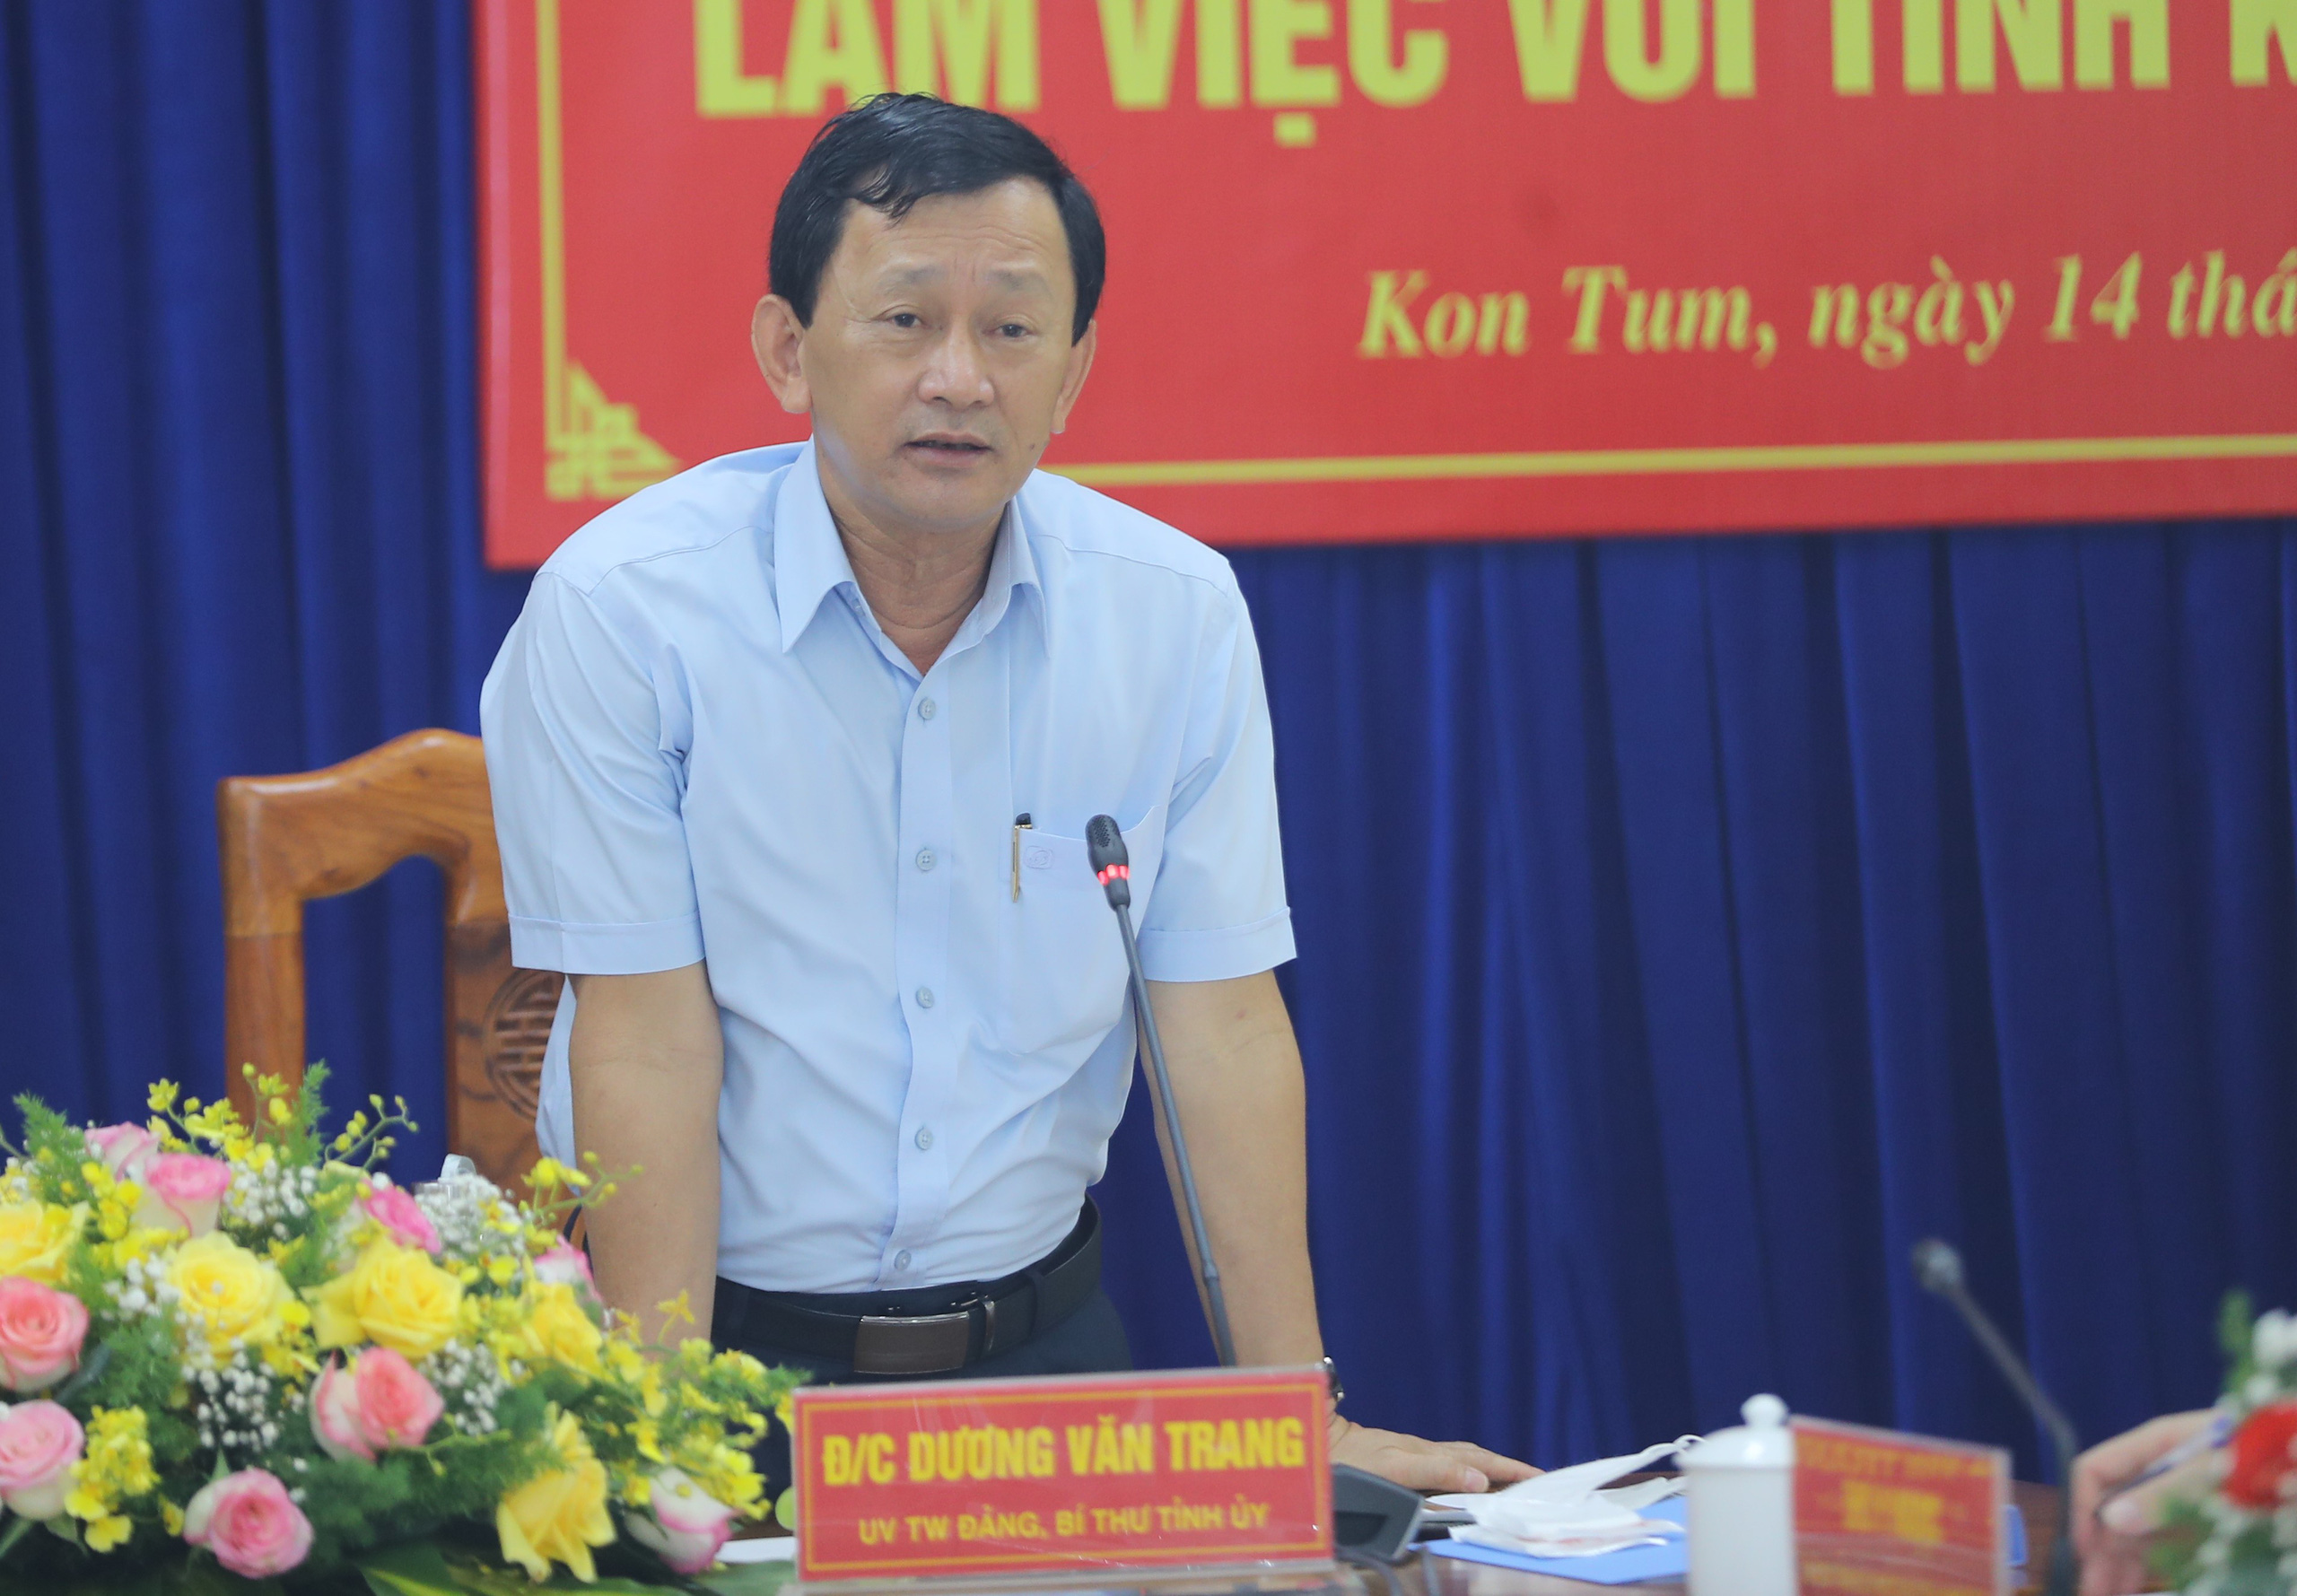 Bộ trưởng Nguyễn Văn Hùng: “Kon Tum có quang cảnh đẹp, sao không mạnh dạn đặt ước mơ trở thành trung tâm hội nghị của khu vực miền Trung-Tây Nguyên” - Ảnh 3.